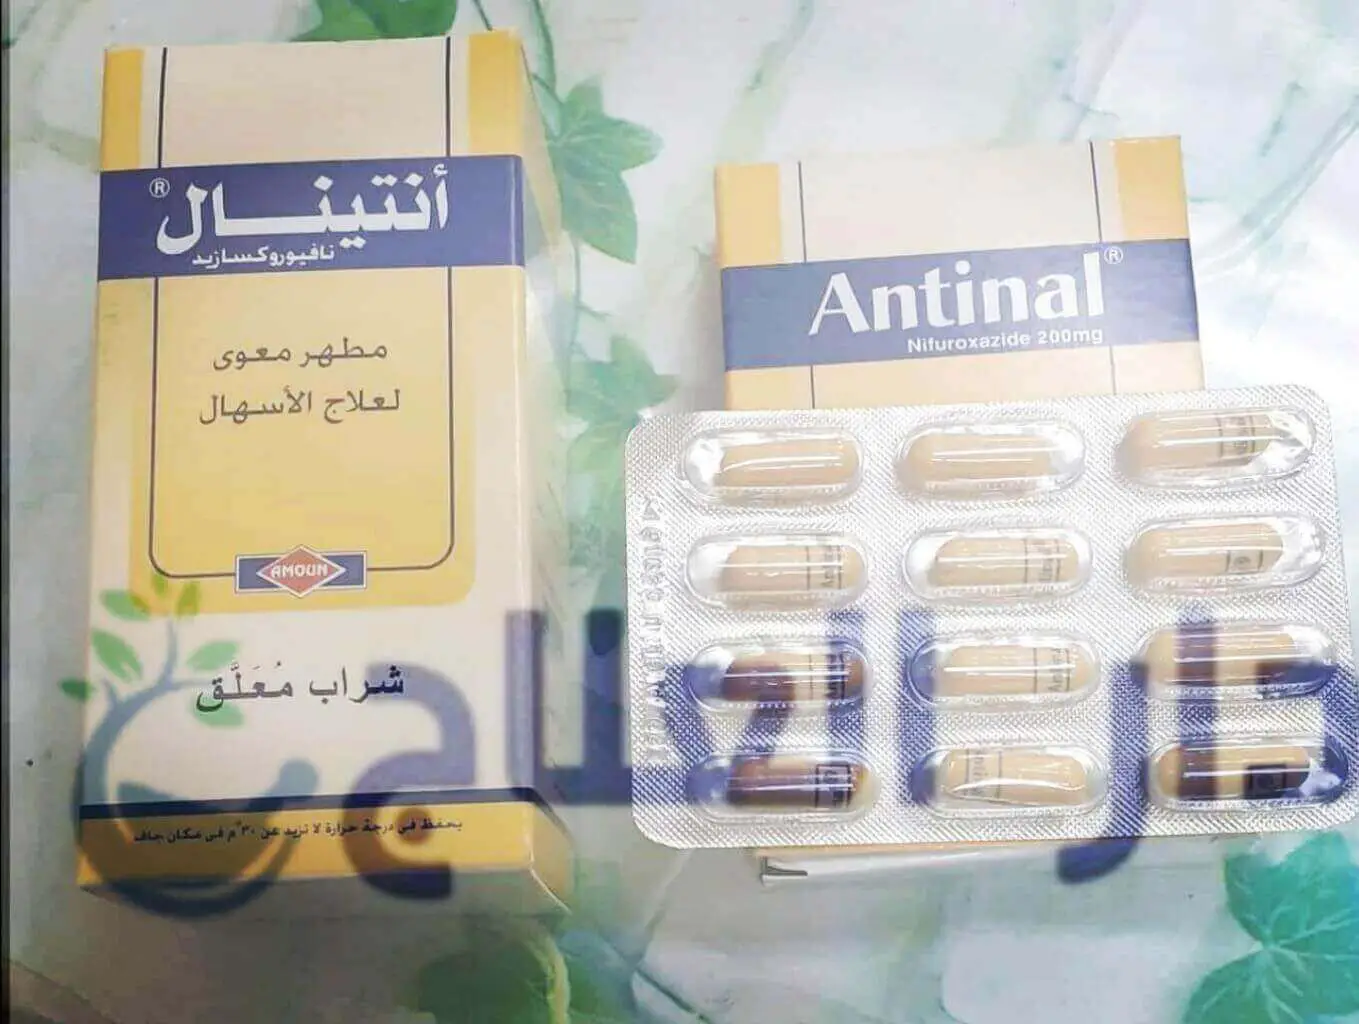 انتينال - انتينال اقراص - انتينال كبسول - دواء انتينال - antinal